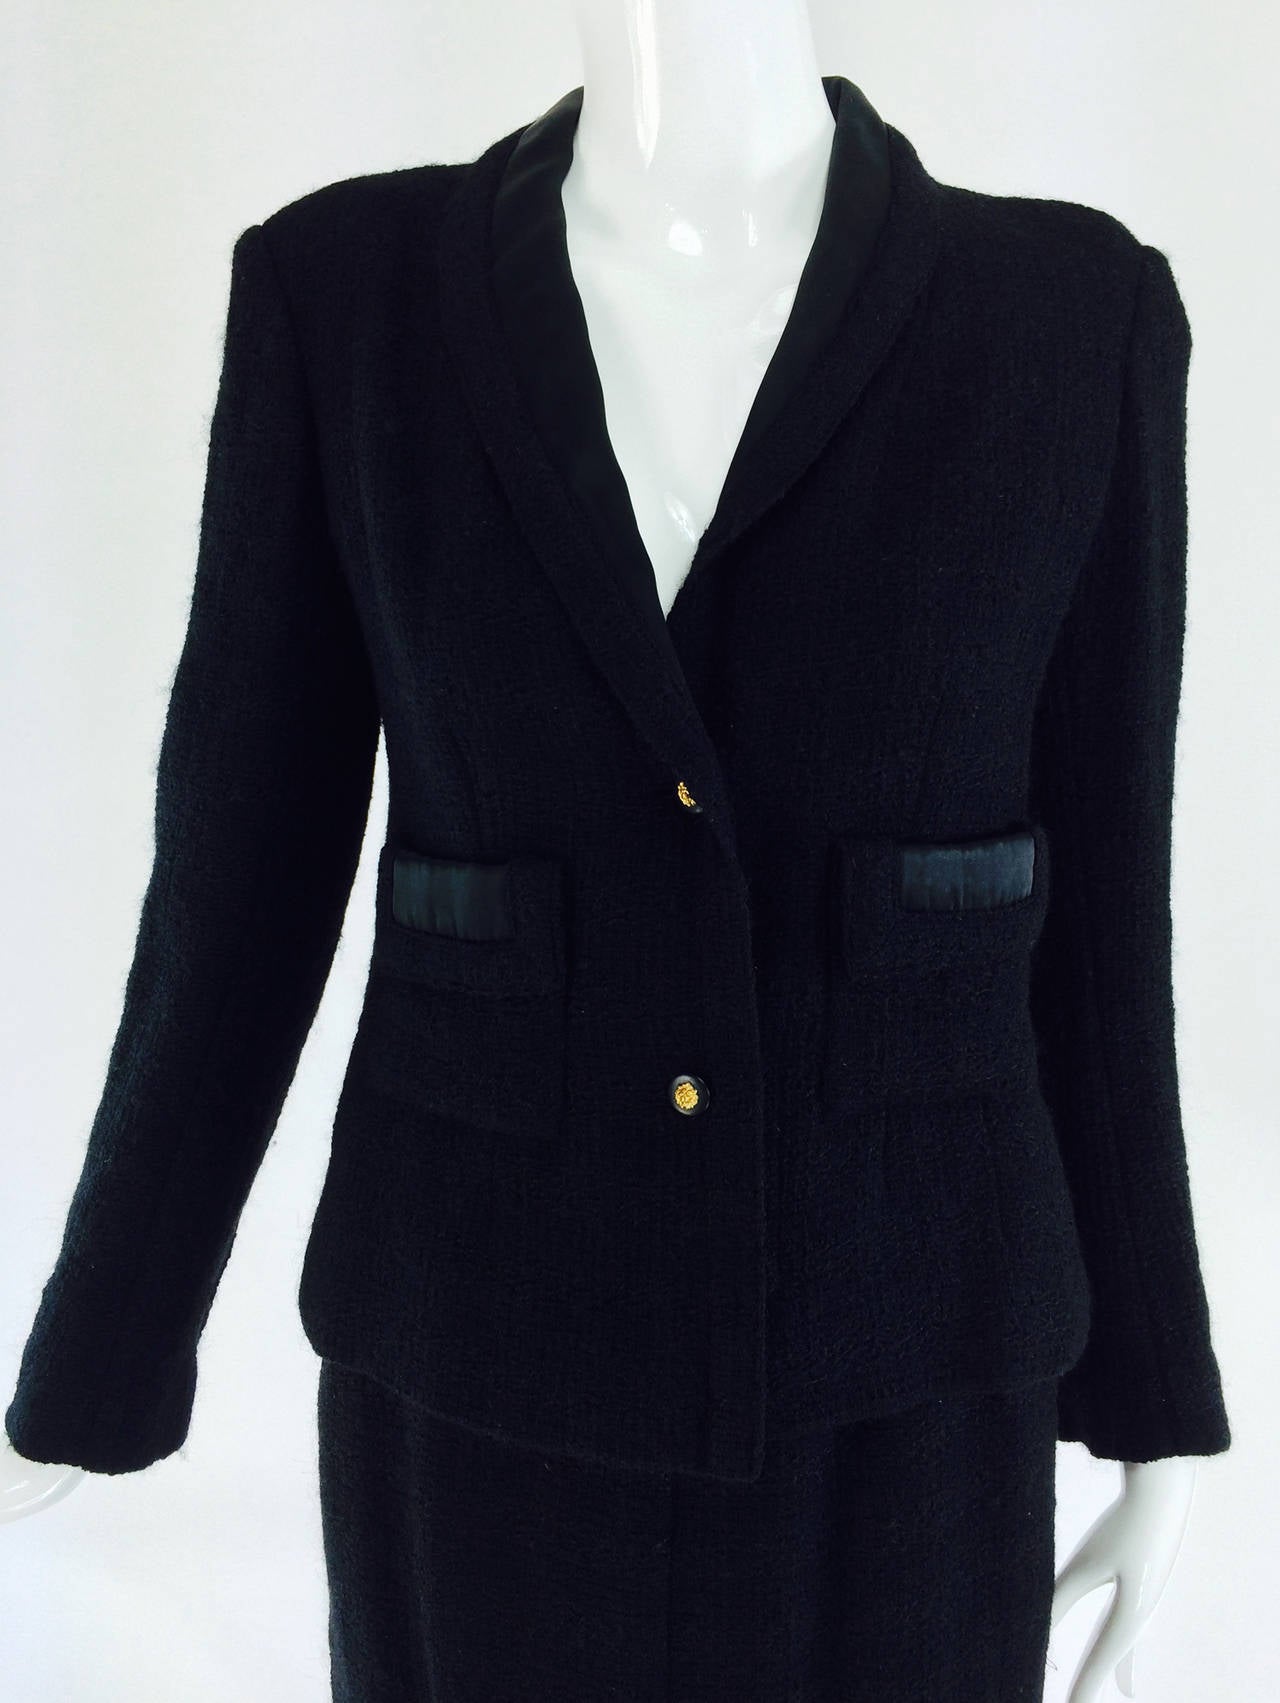 Chanel Creations-Paris schwarzer Anzug aus Tweedwolle, datiert 1. November 1971. Chanel Creations war das Label Pret a Porter, das bis zur Einführung des Labels Chanel Boutique verwendet wurde. Dies ist ein wunderbares Beispiel für den klassischen